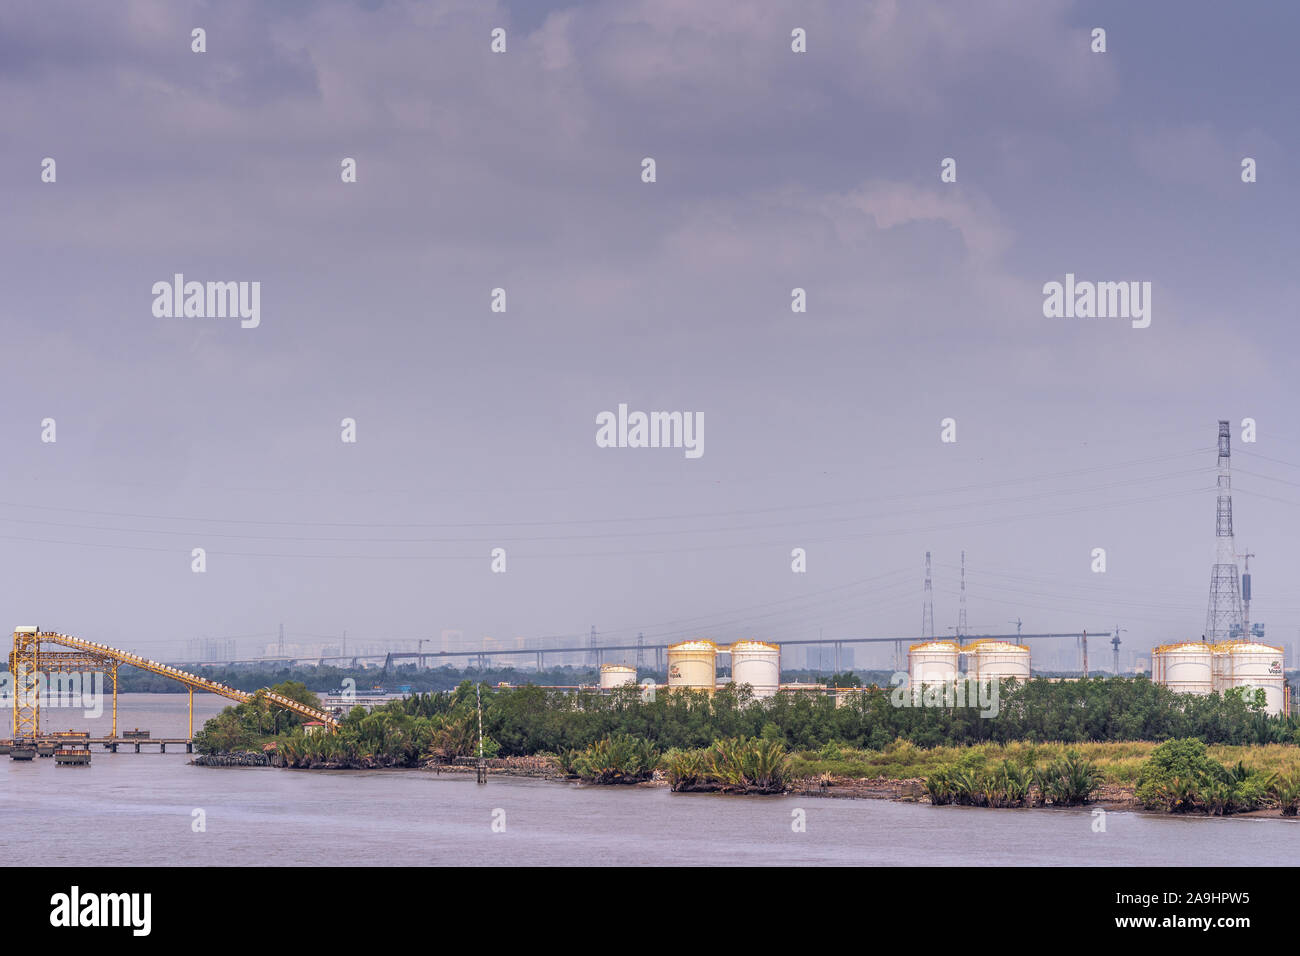 Lungo il fiume Tau, Vietnam - Marzo 12, 2019: Phuoc Khanh area. PetroVietnam serbatoi bianco fronteggiata da fogliame verde e giallo pipeline sistema di pompaggio su wa Foto Stock